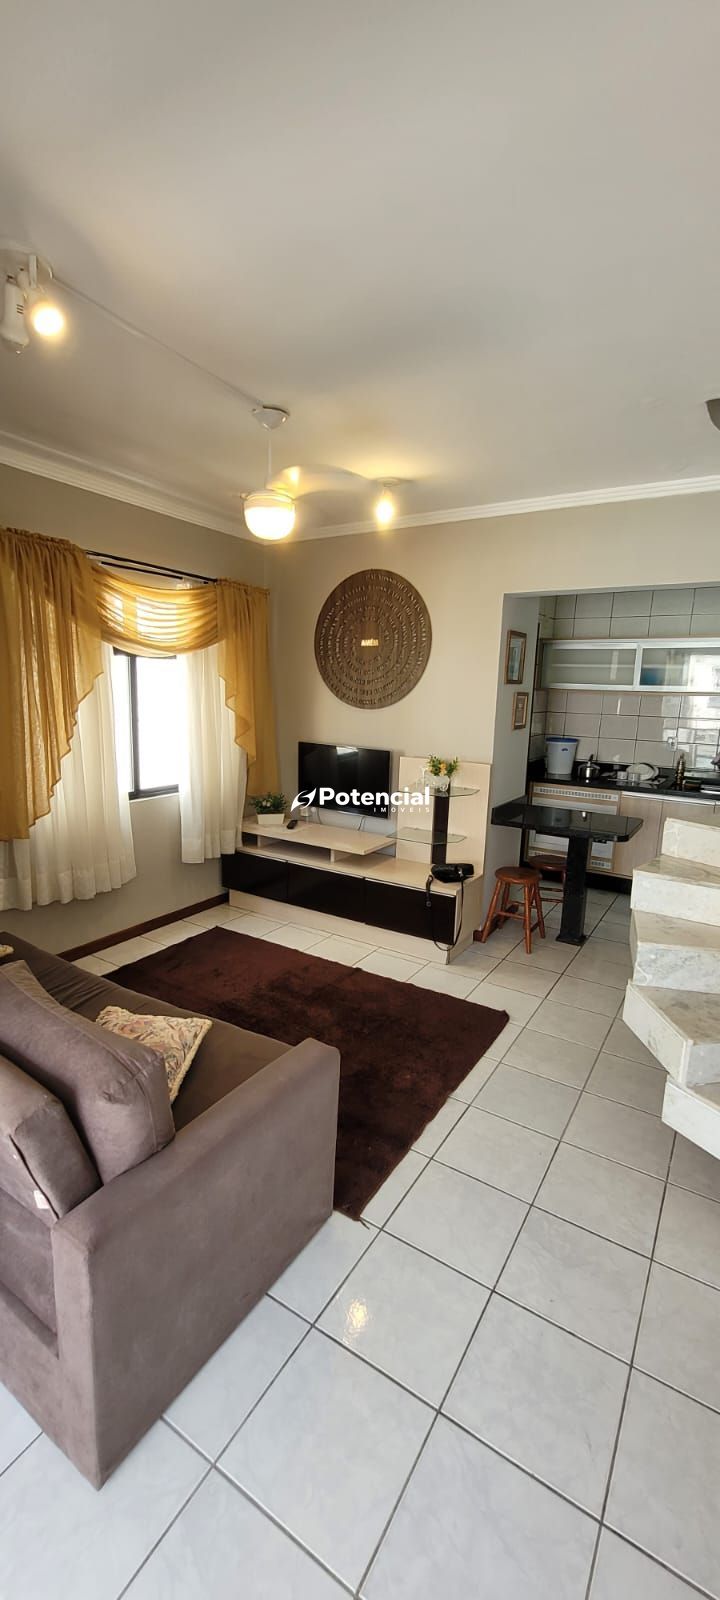 Imagem de Apartamento 3 Dormitórios sendo 1 Suíte | Meia Praia - Itapema | Potencial Imóveis.